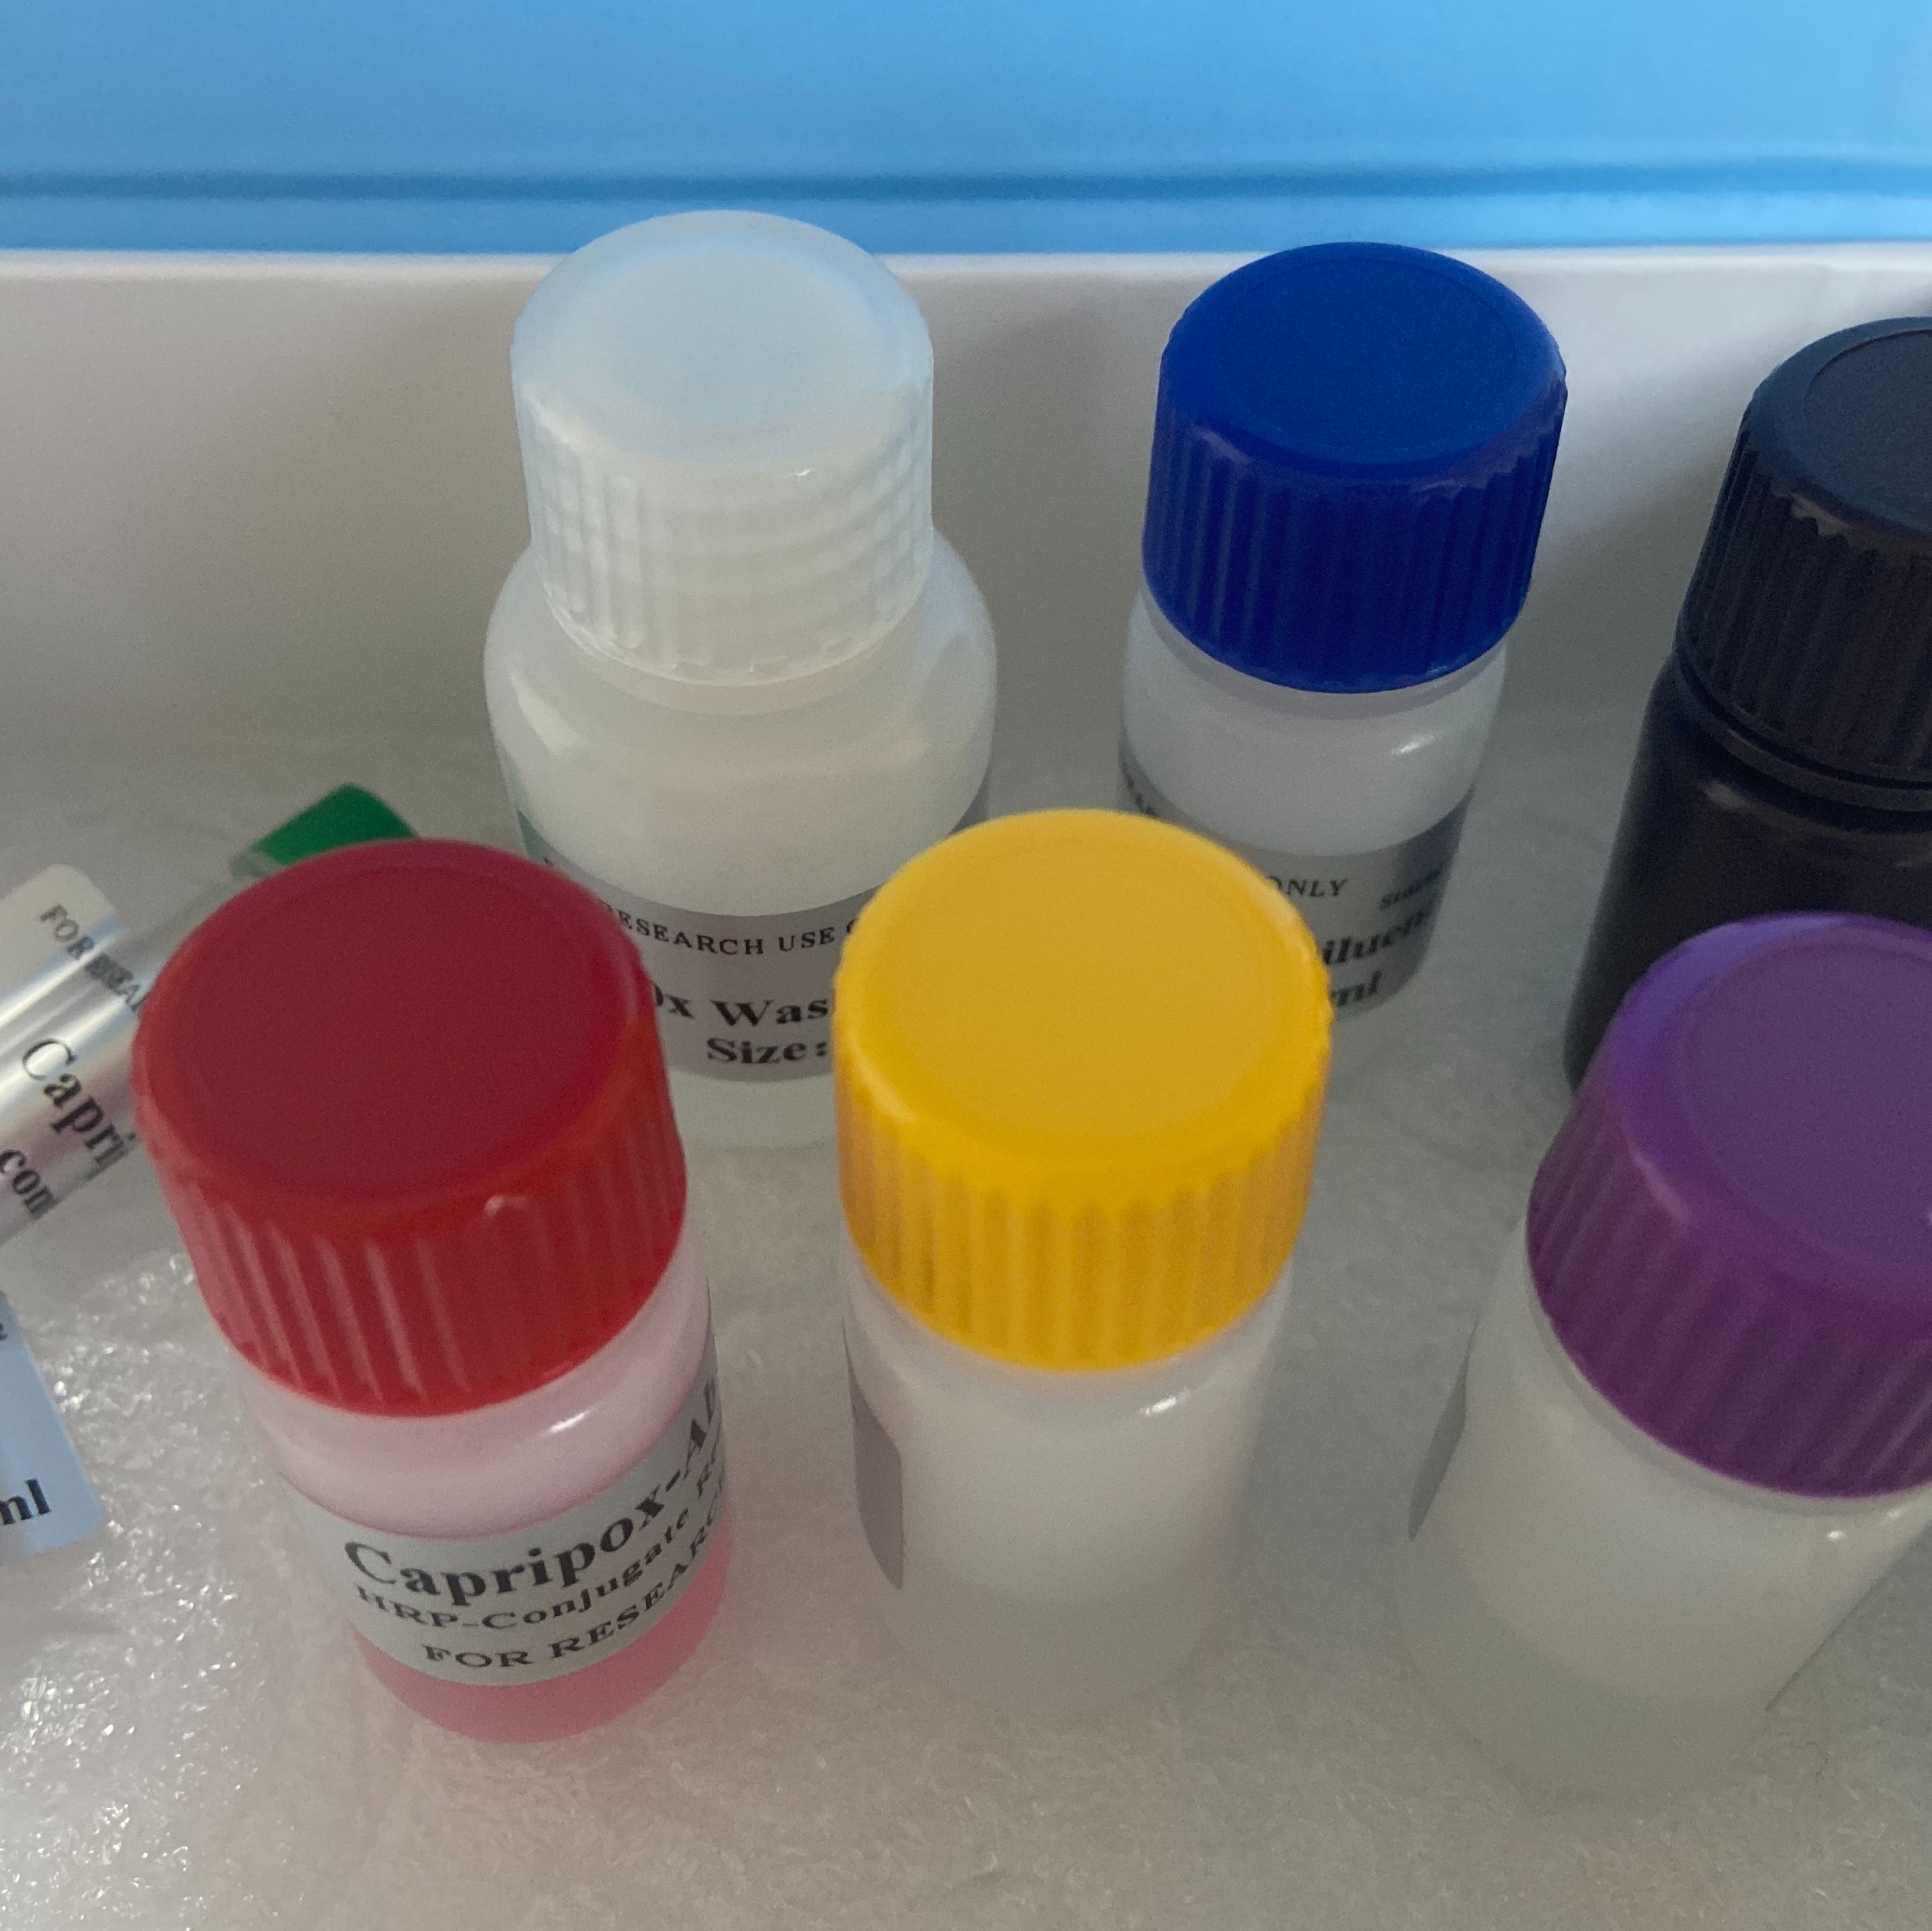 人补体调节蛋白(CCP)ELISA试剂盒